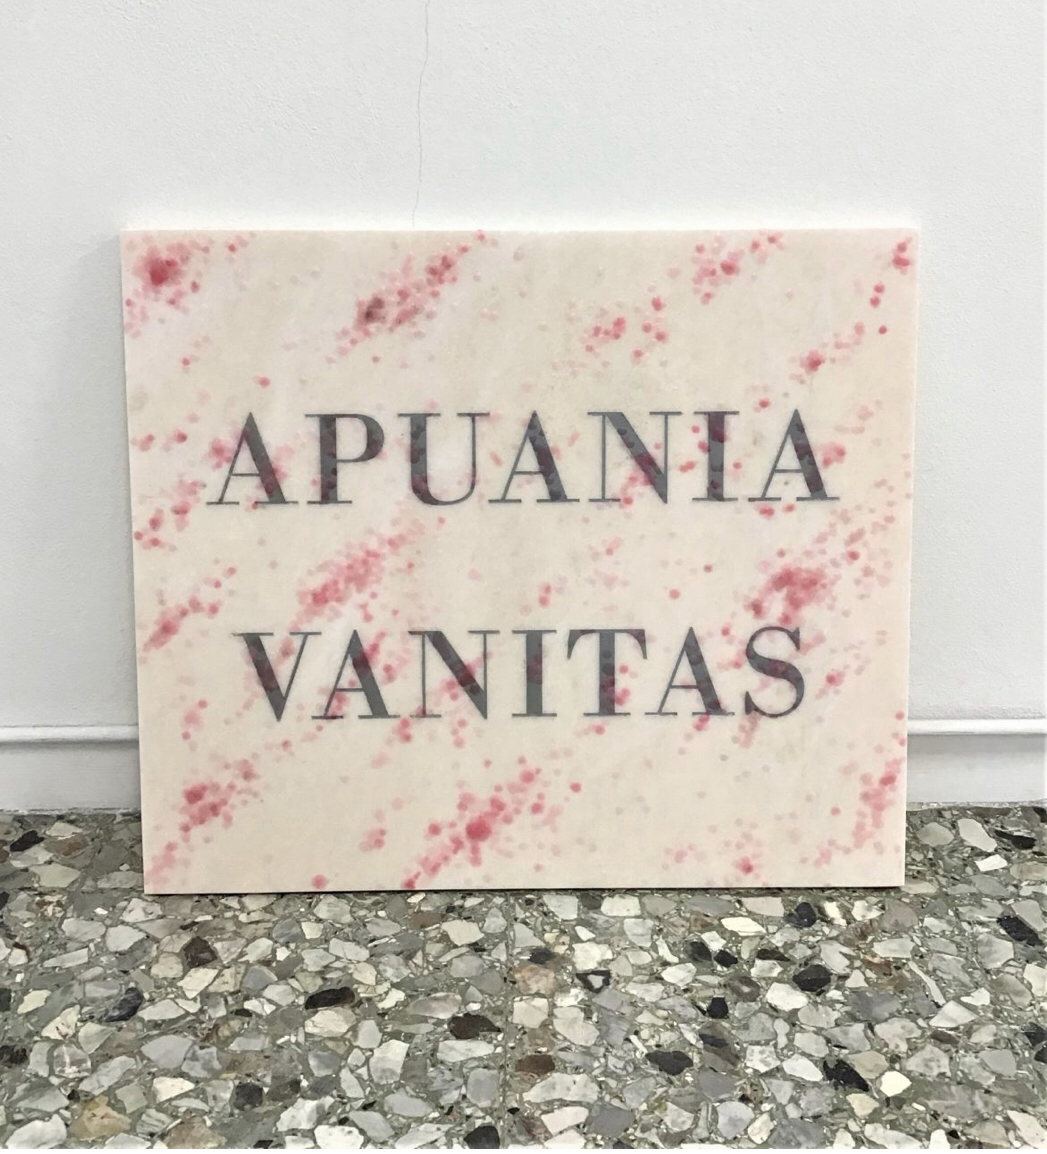 Michele Chiossi APUANIA VANITAS, 2019  marmo rosa Portogallo, incisione in silver, cera, pigmenti colorati  scultura targa omaggio Salvo trompe l'oeil